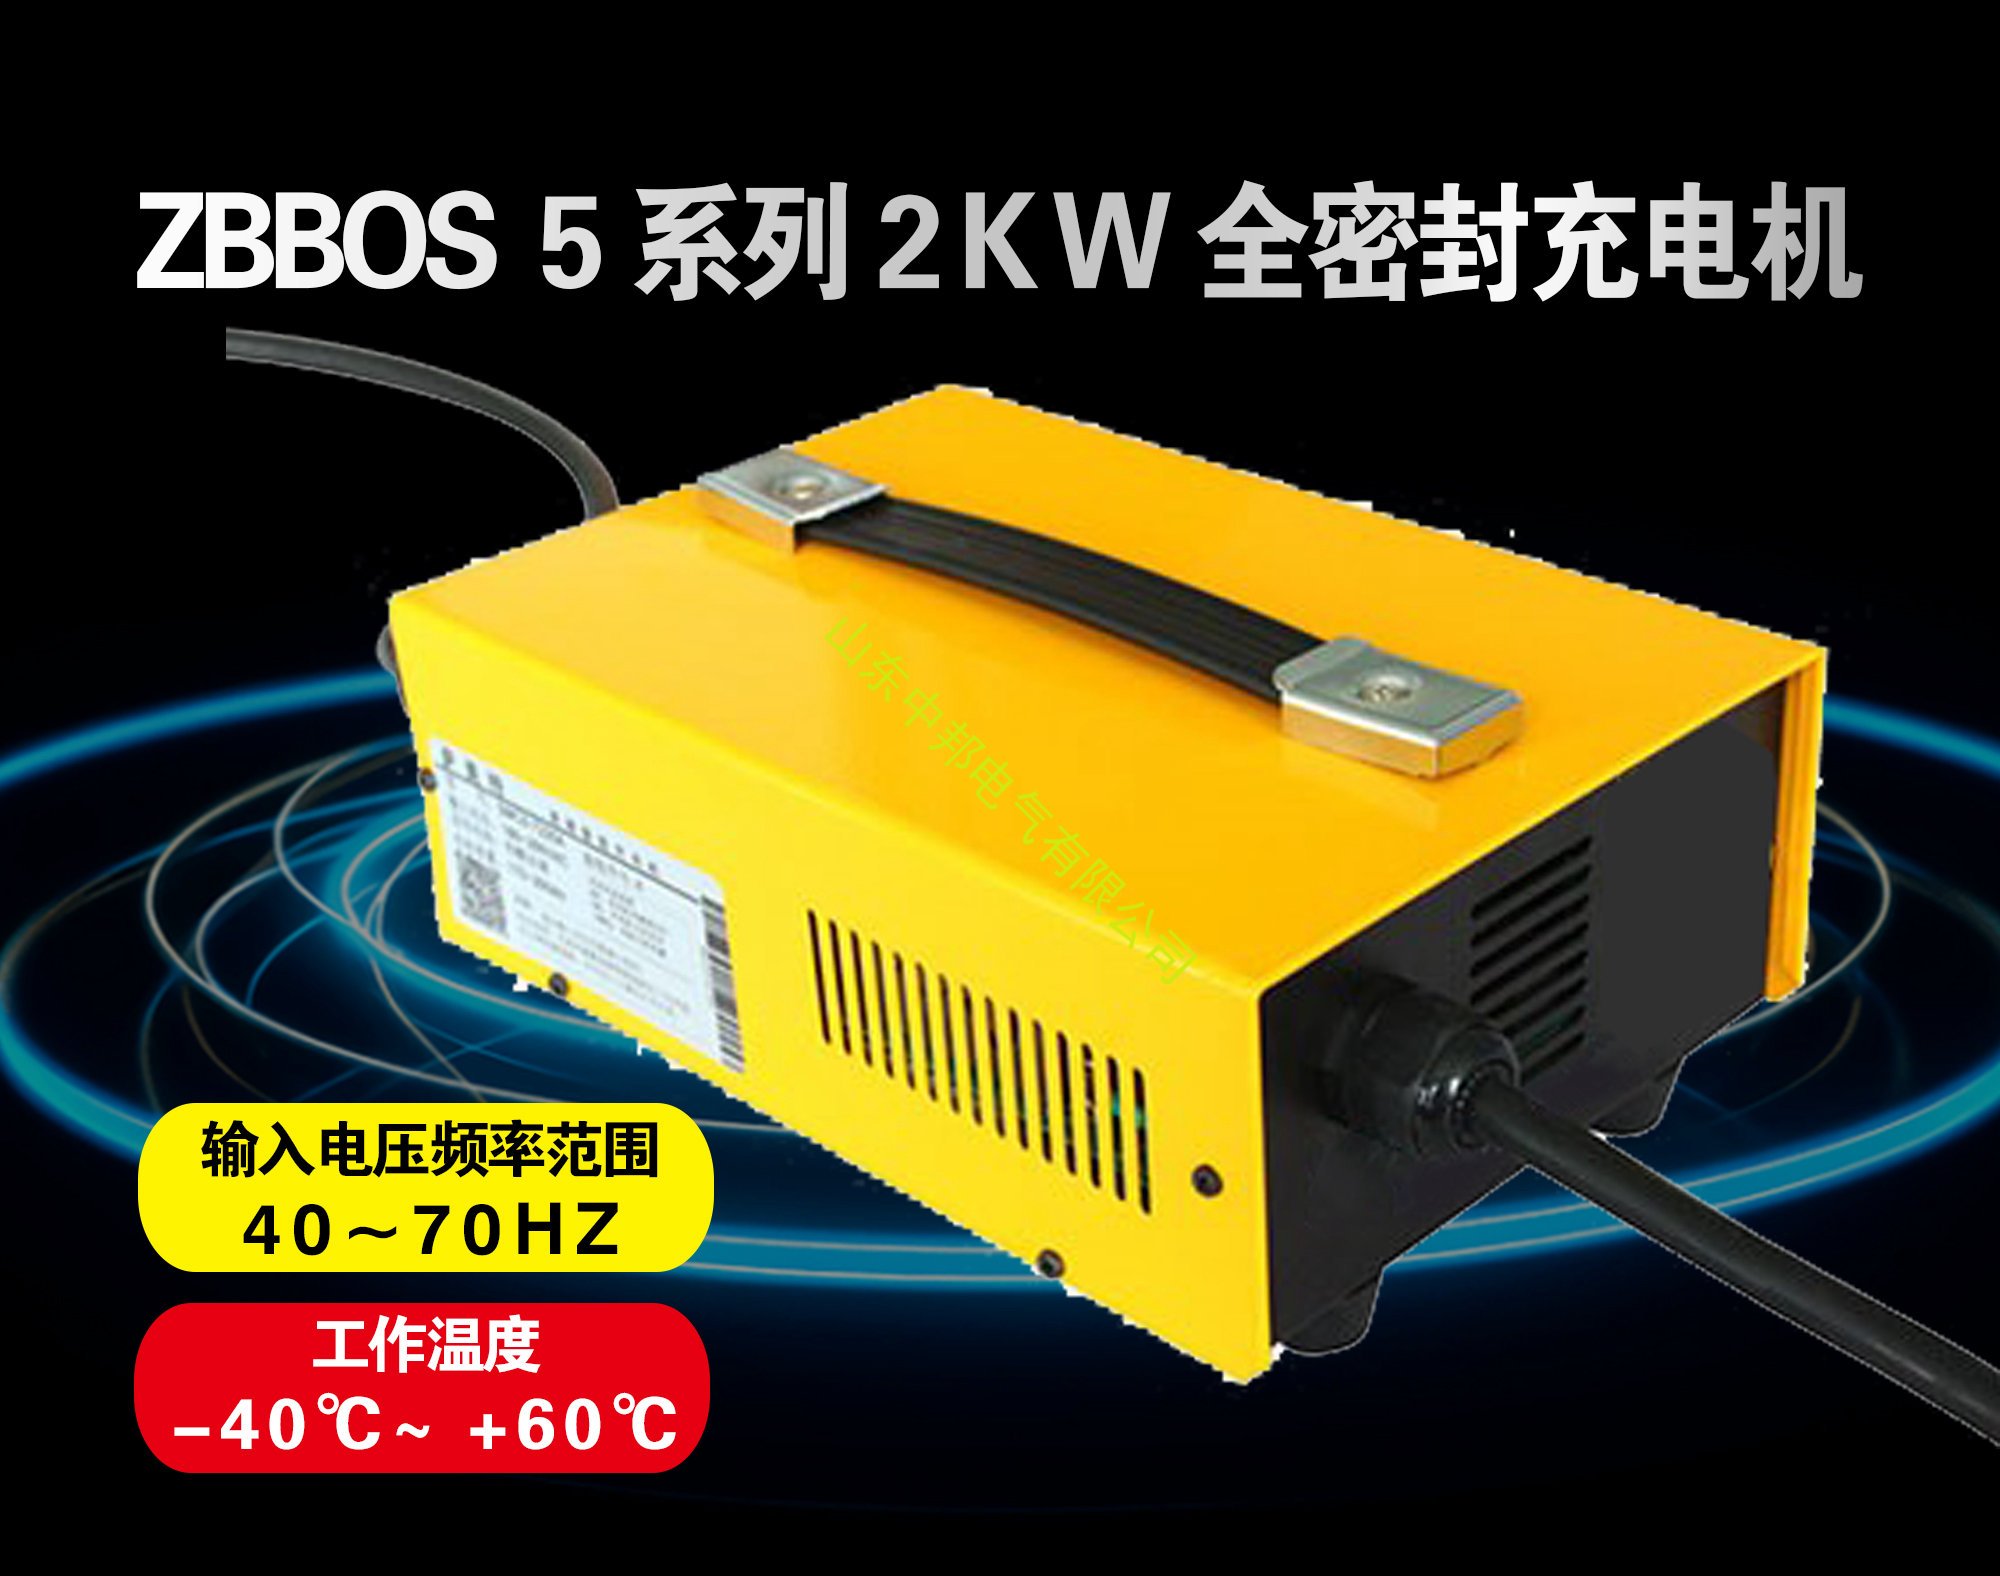 ZBBOS 5系列2KW充电机